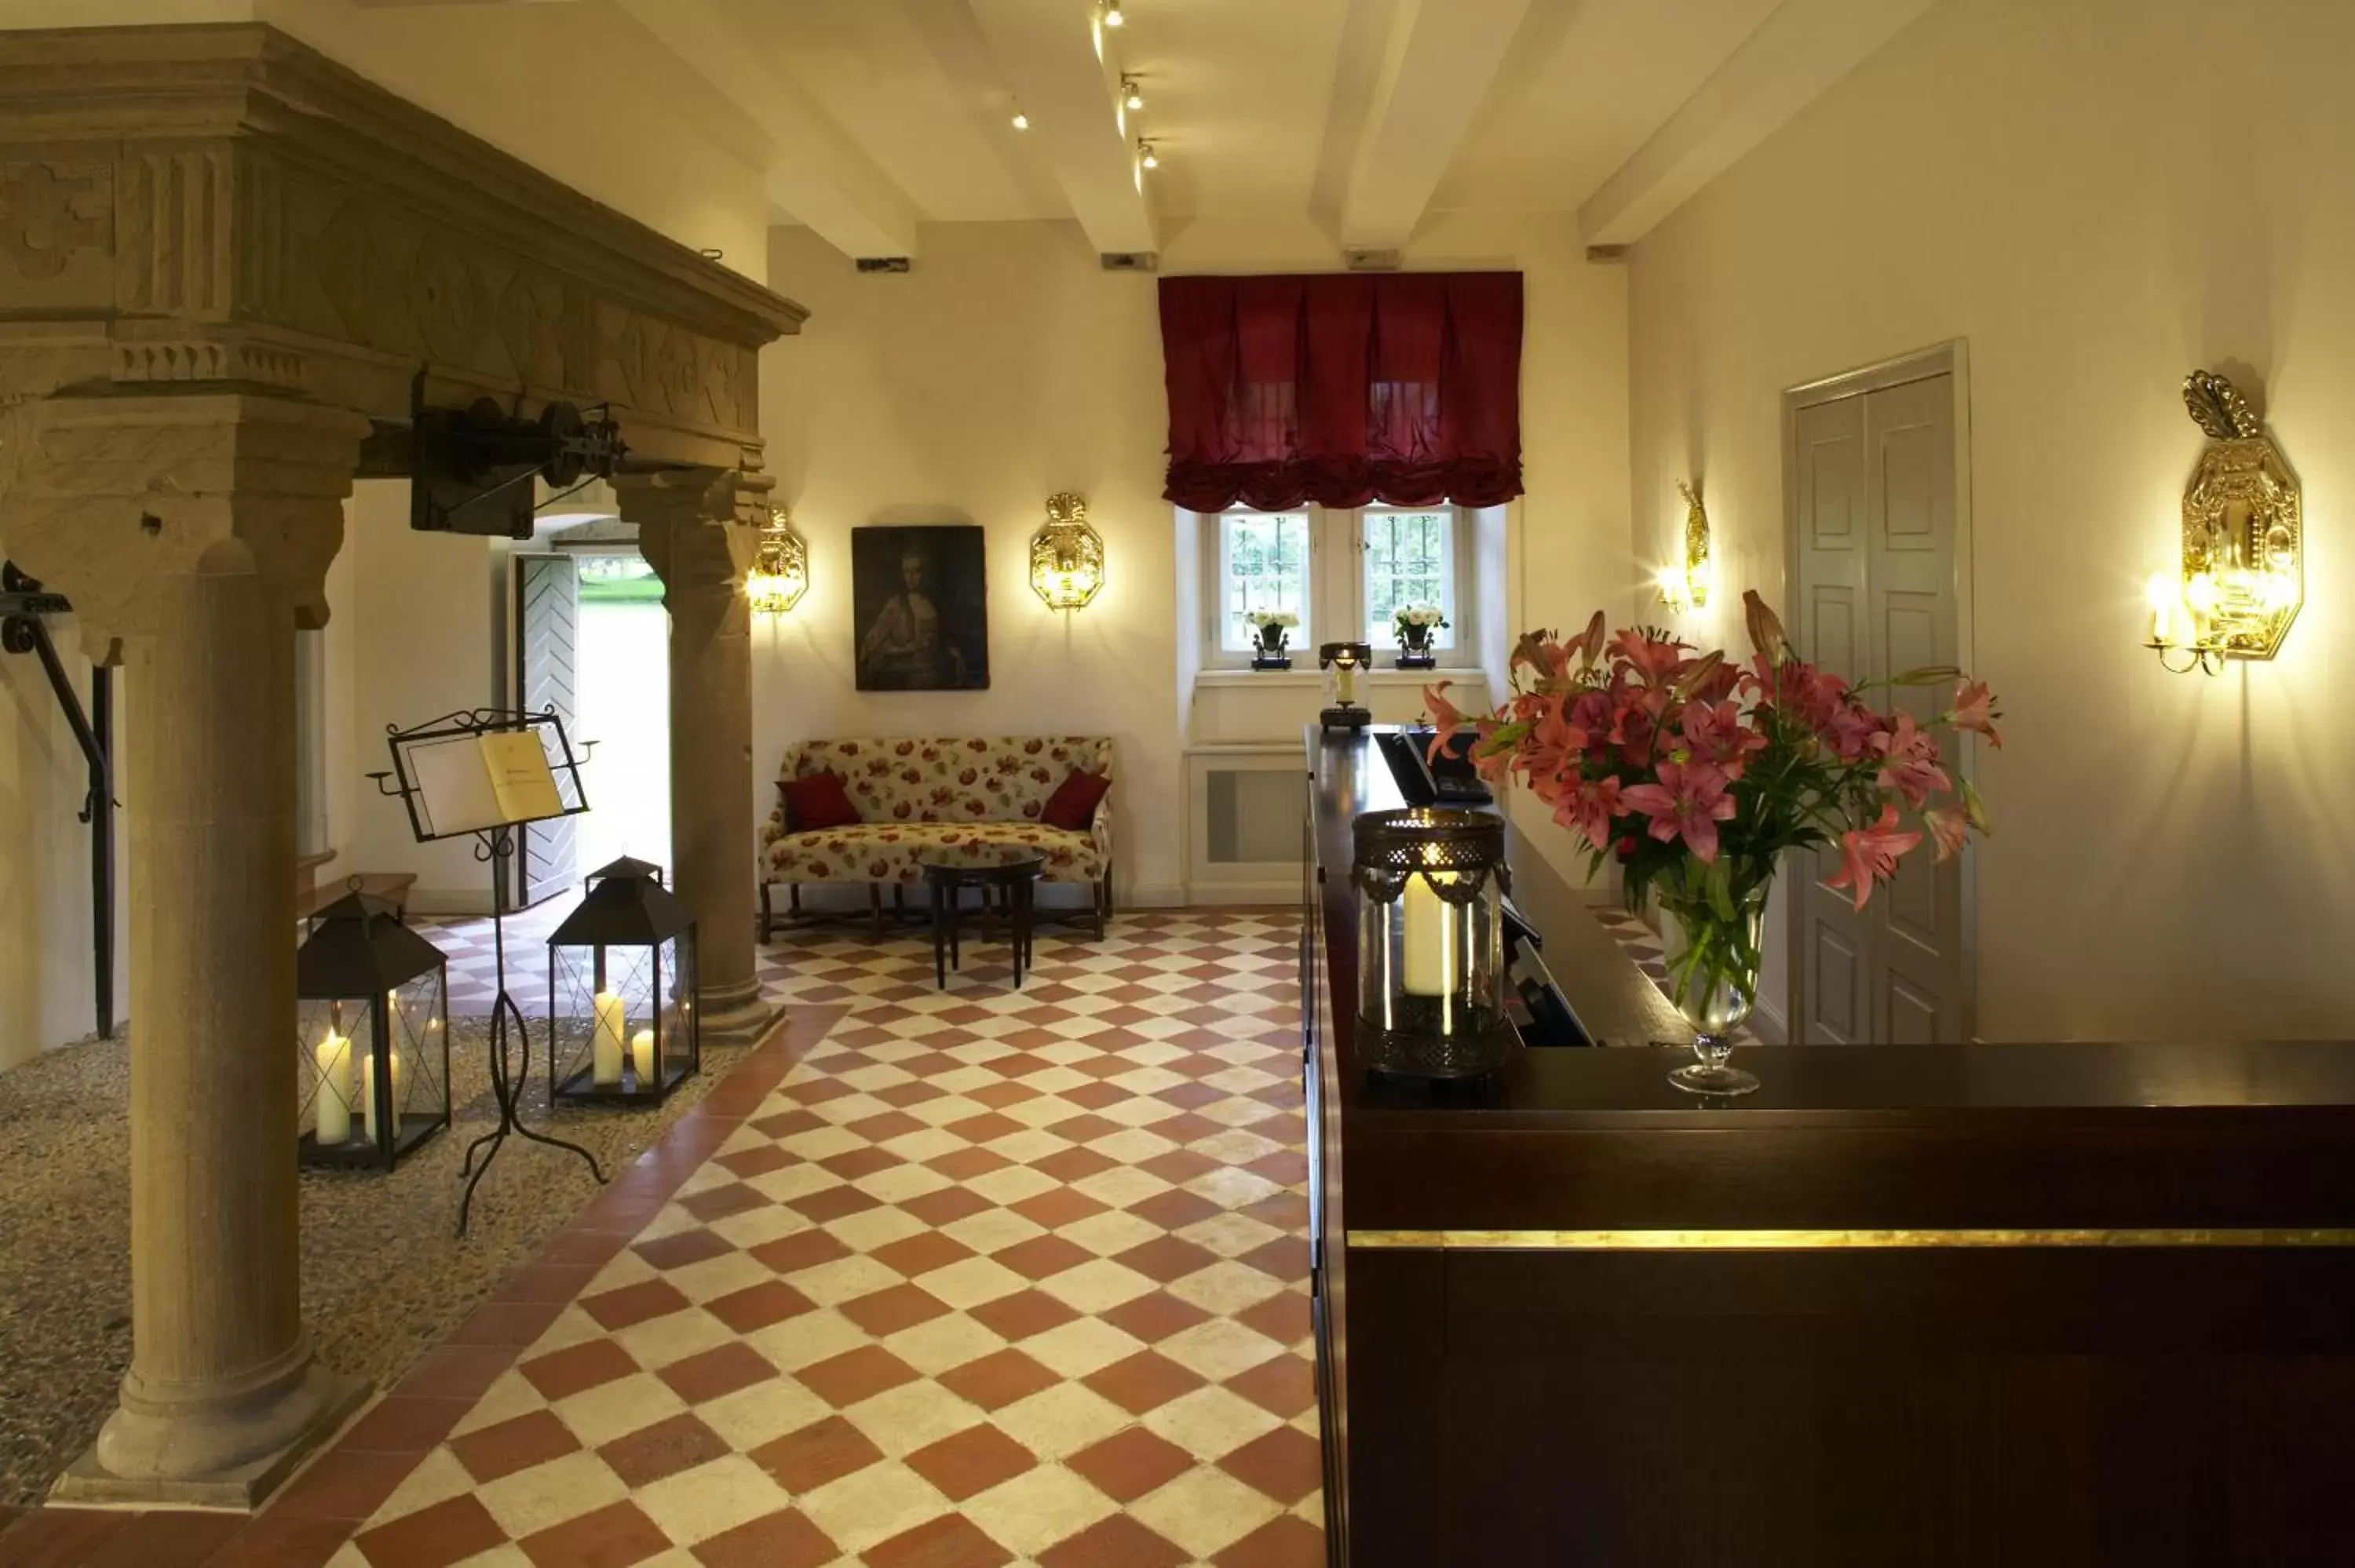 Lobby or reception in Schlosshotel Münchhausen